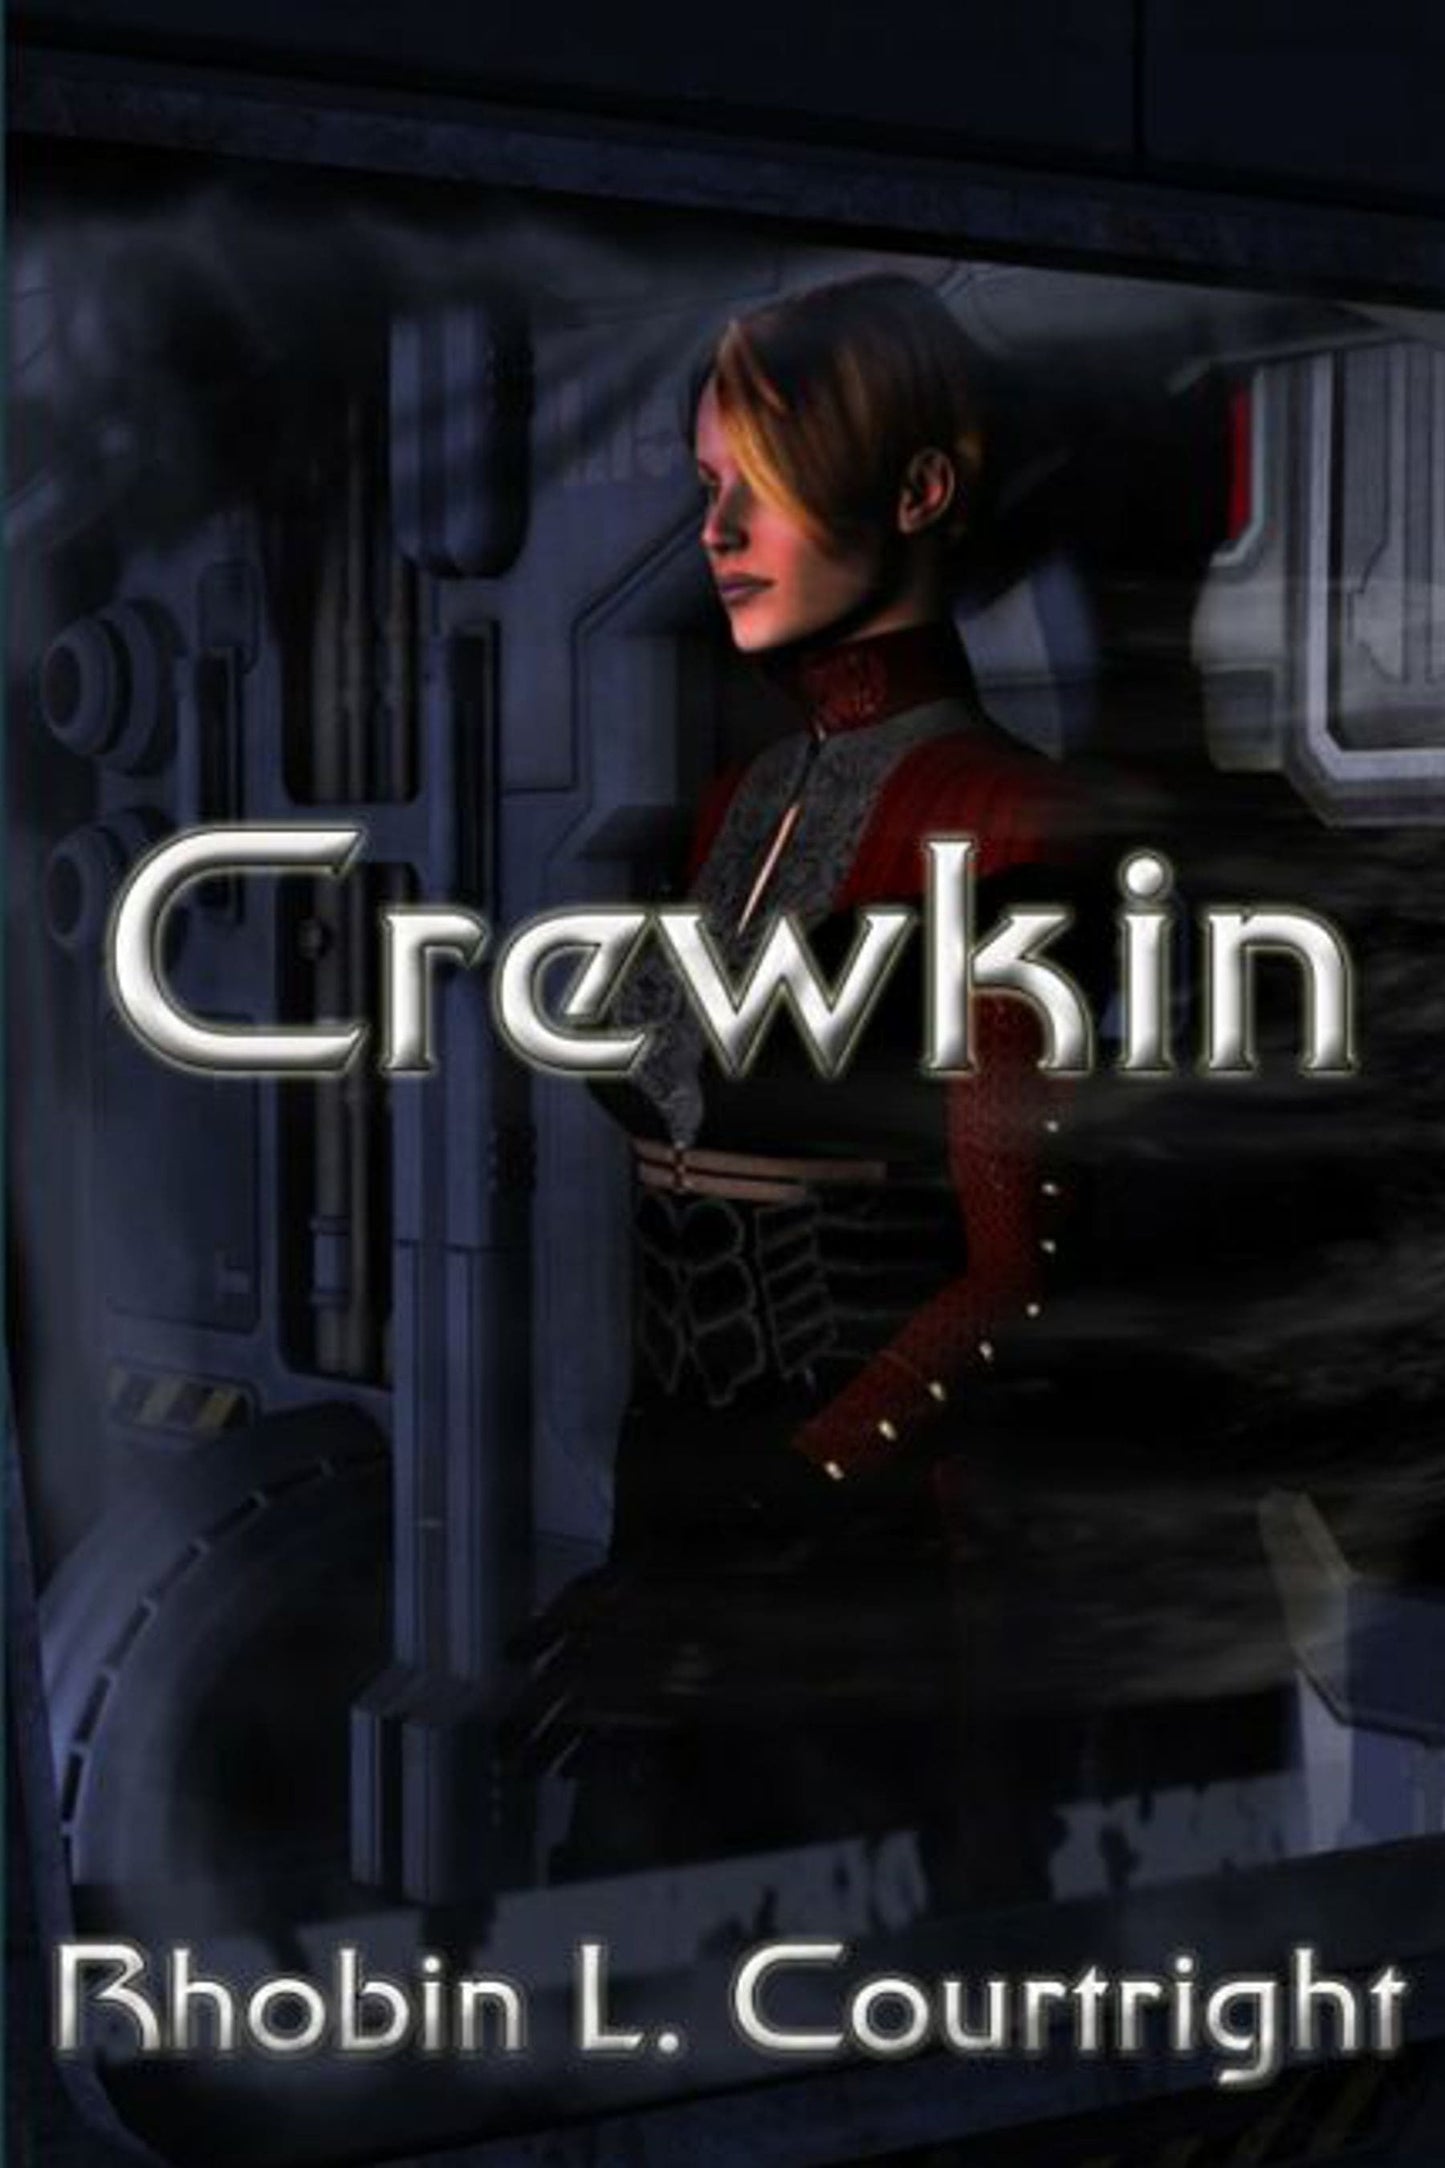 Crewkin